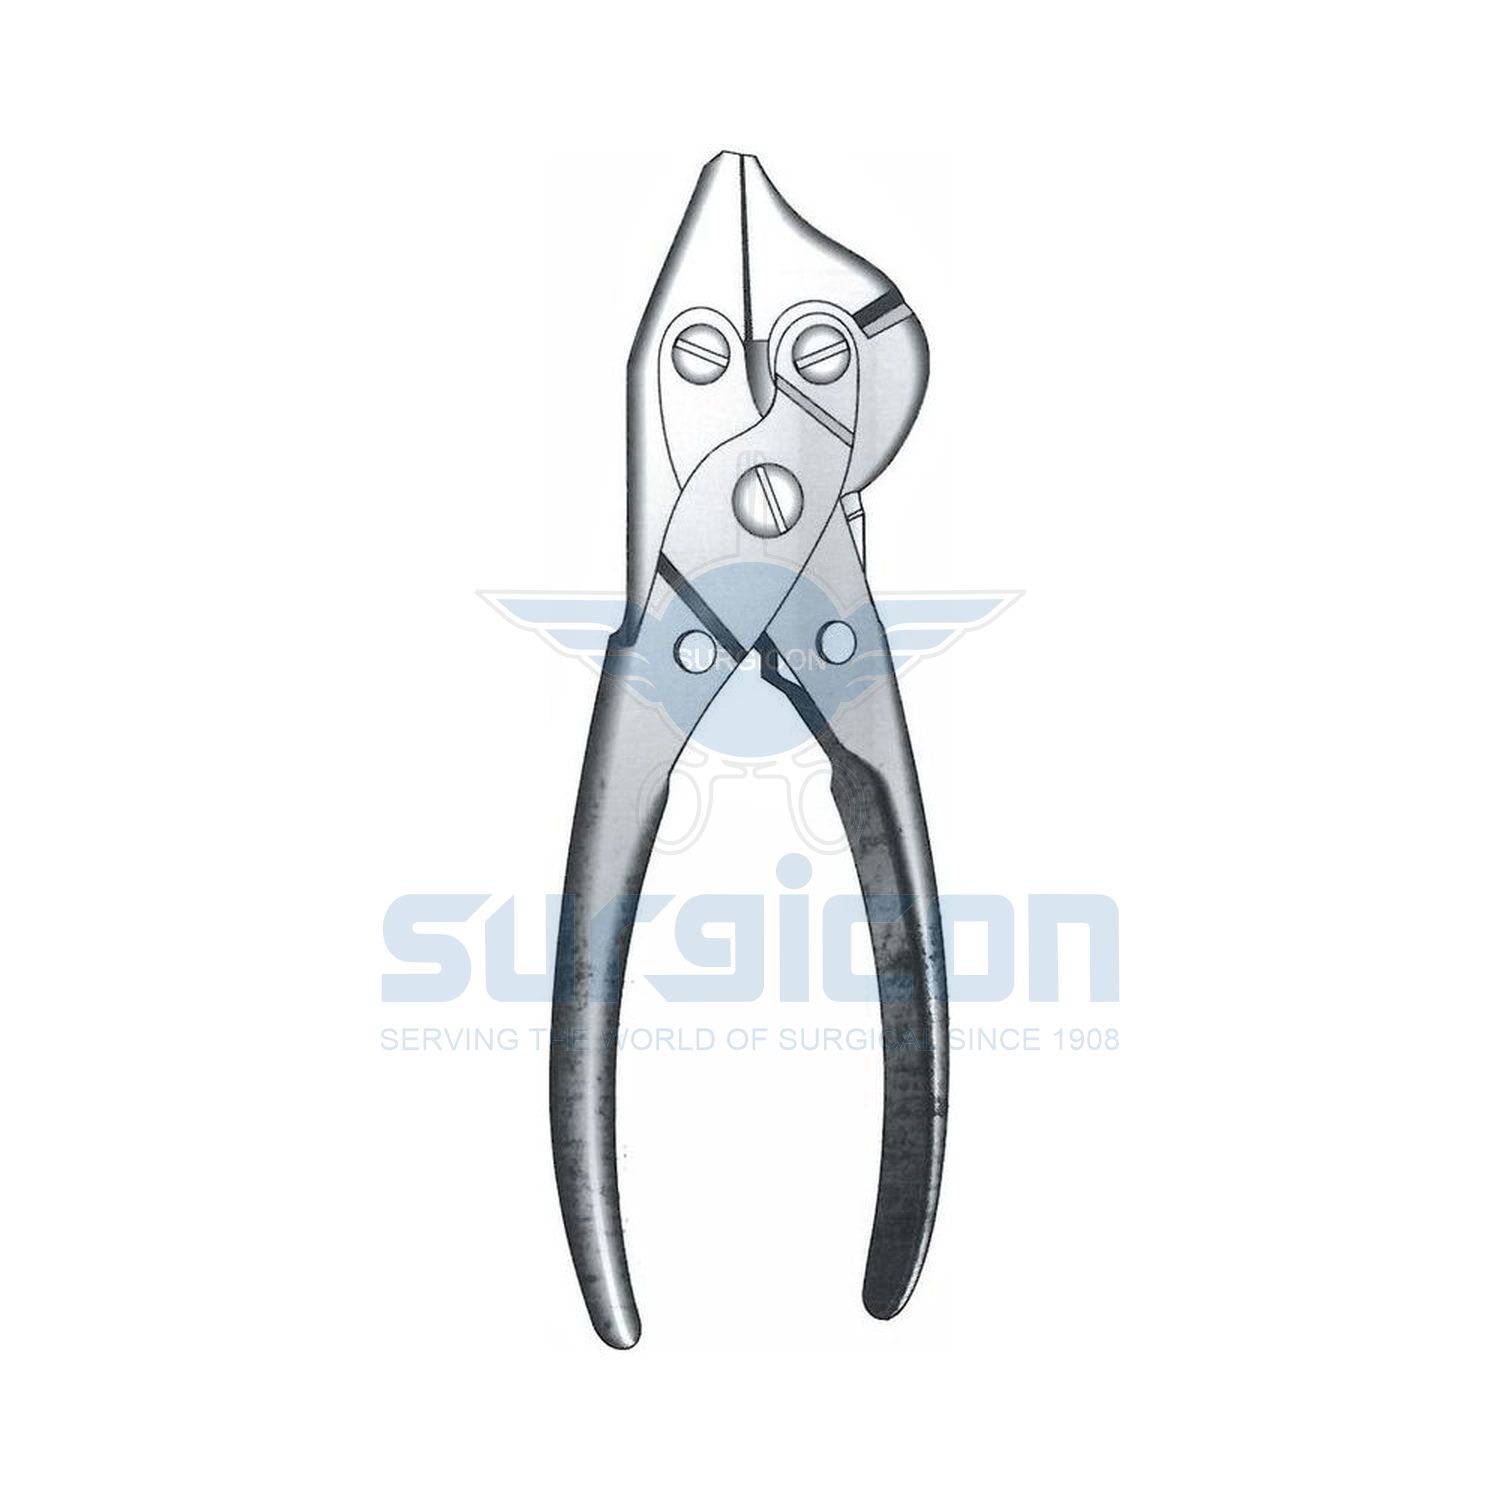 Flat-Nose-Plier,Wire-Cutting-Plier,-Seizing-Forcep-Jo-21-2940